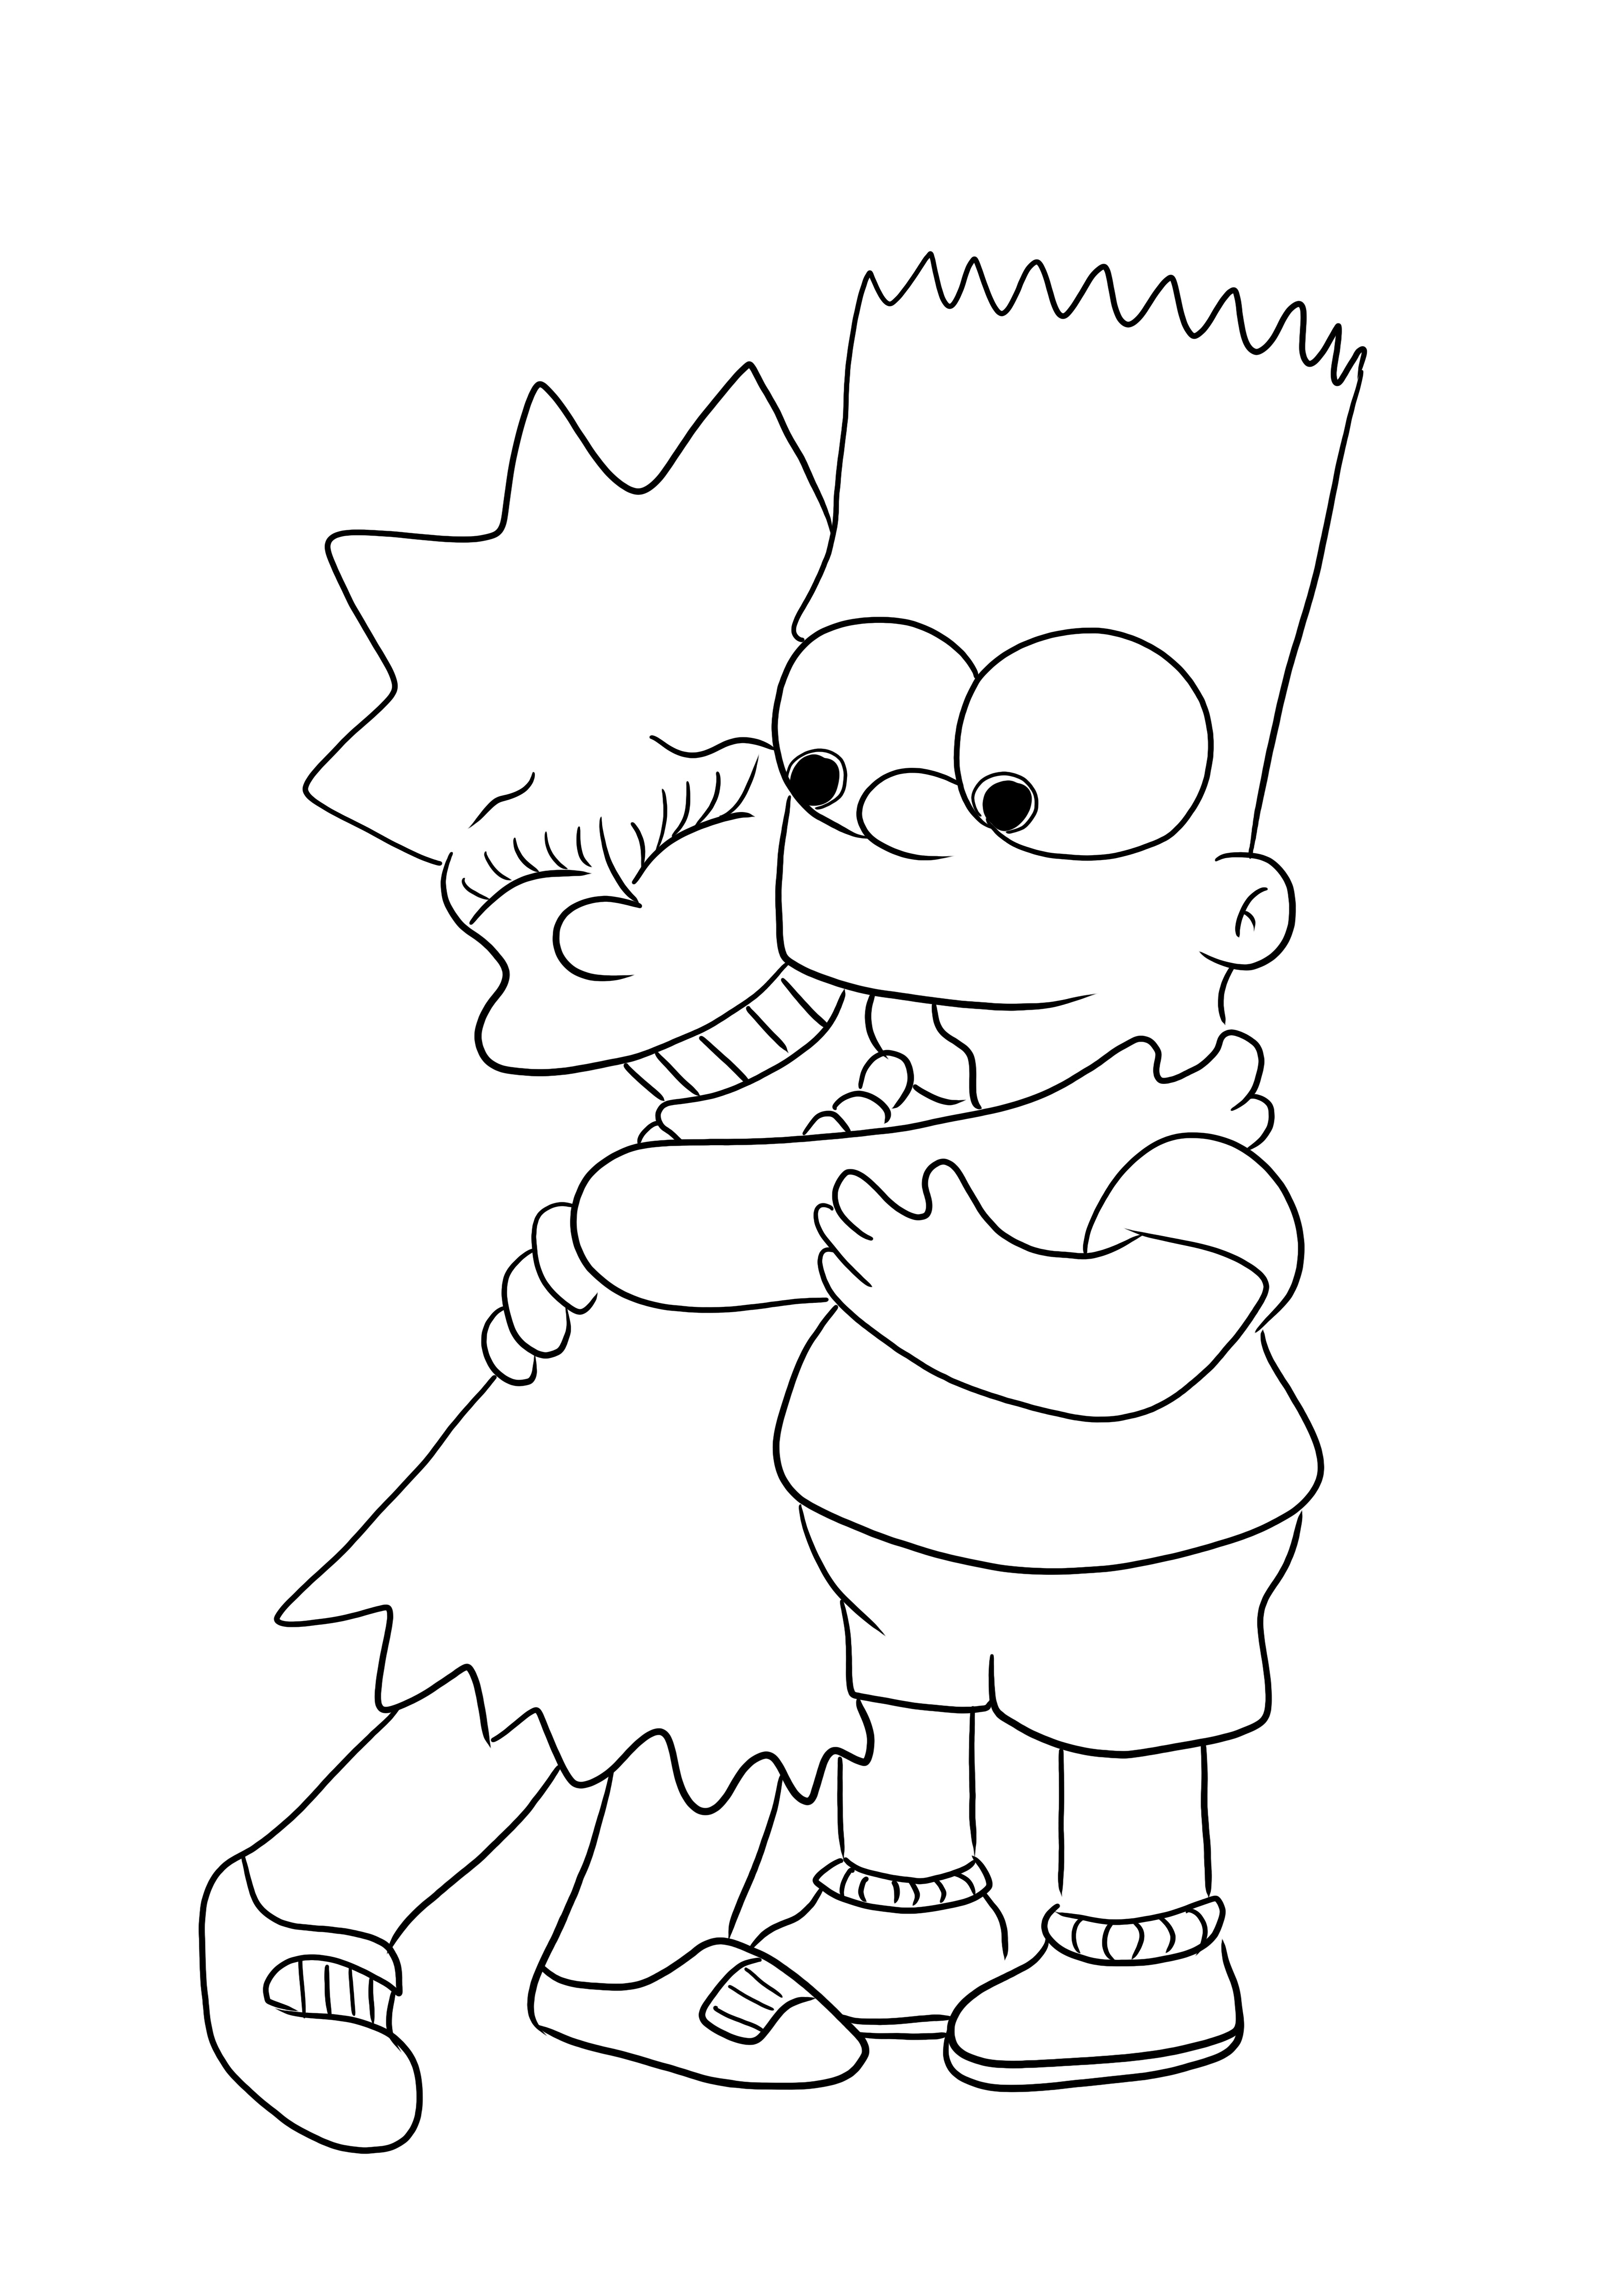 Bezpłatny obraz do kolorowania Barta i Lisy z rodziny Simpsonów do wydrukowania dla dzieci